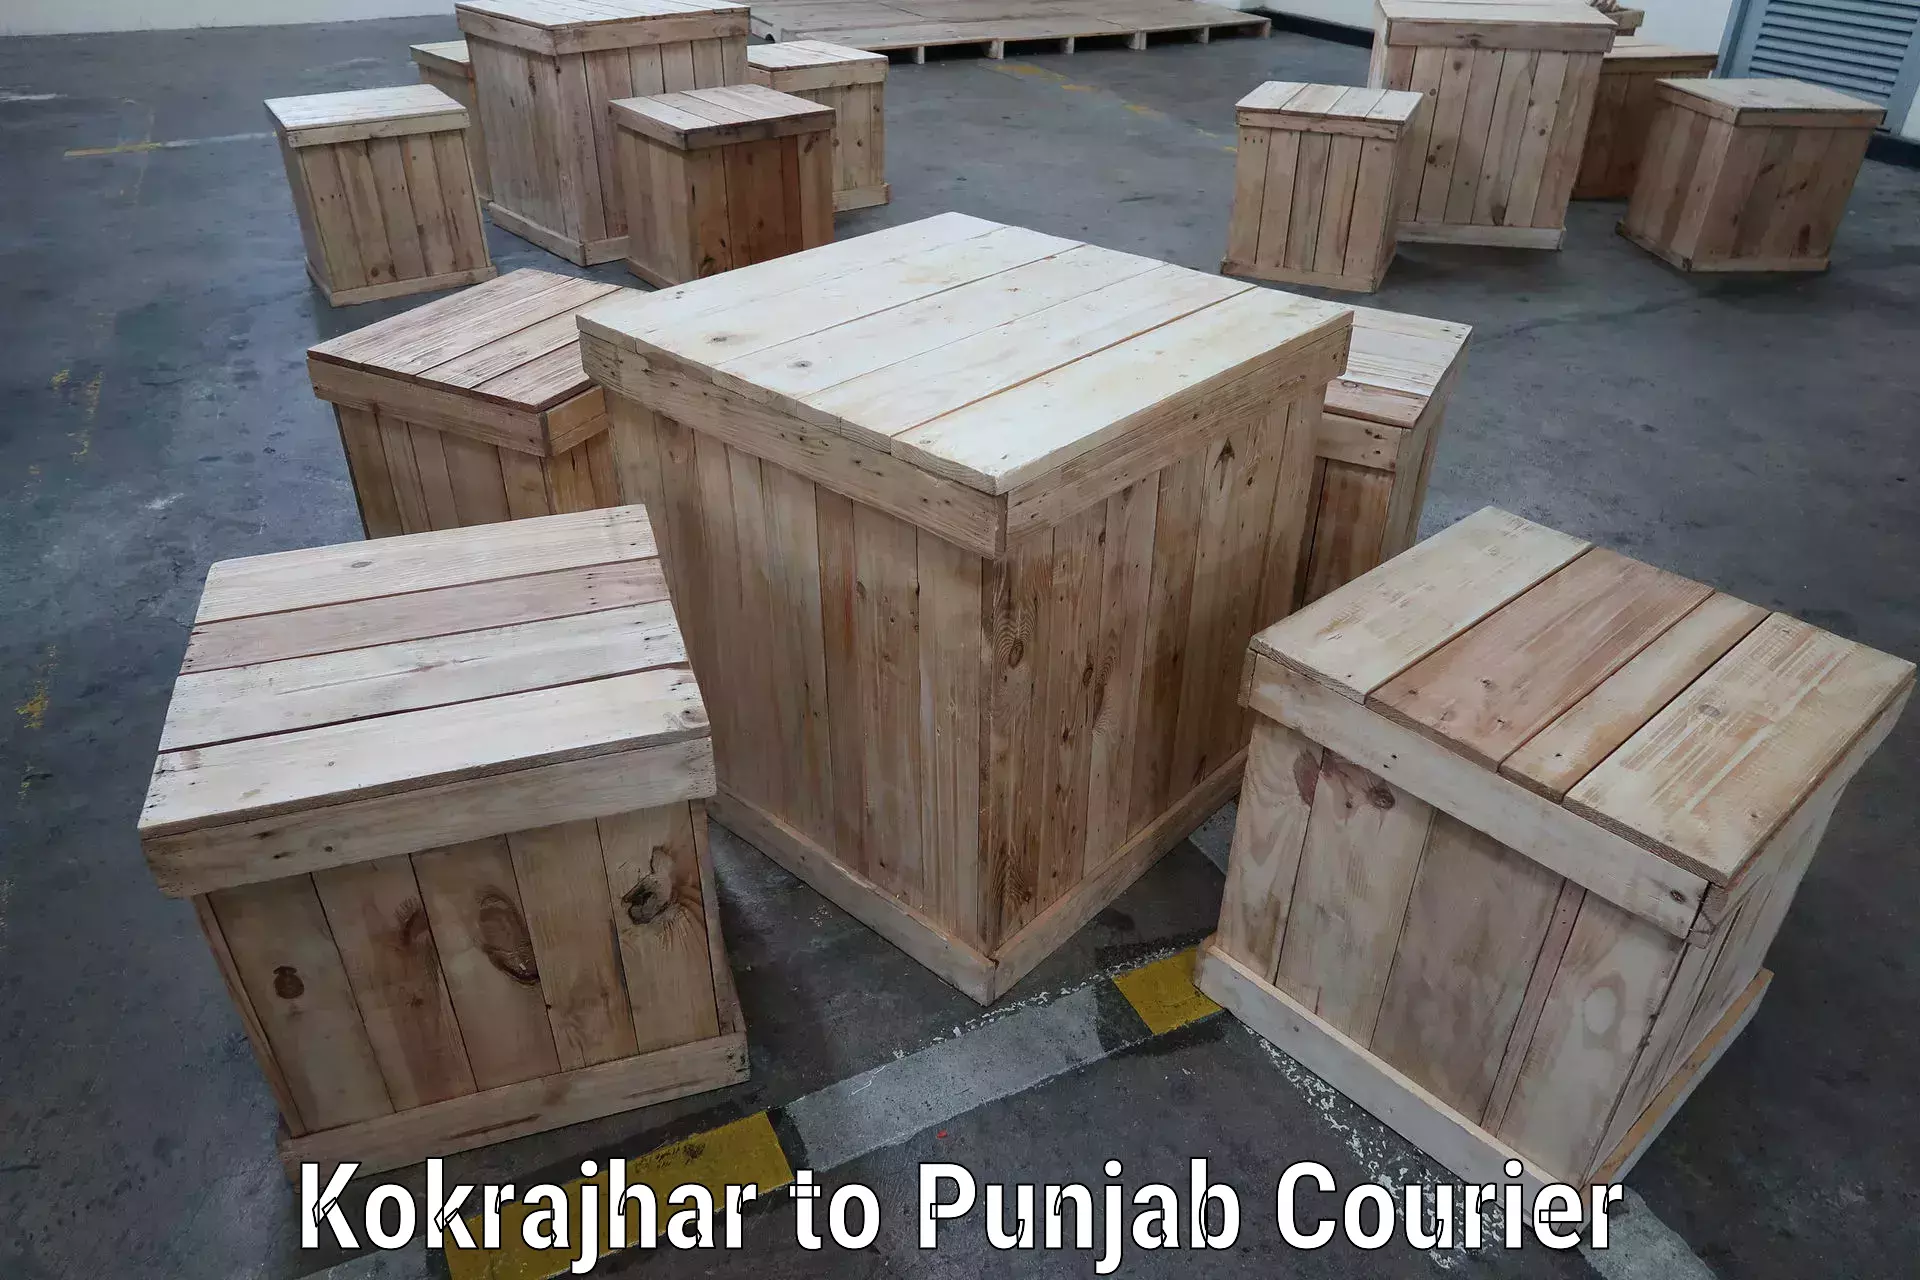 Bulk order courier Kokrajhar to Punjab